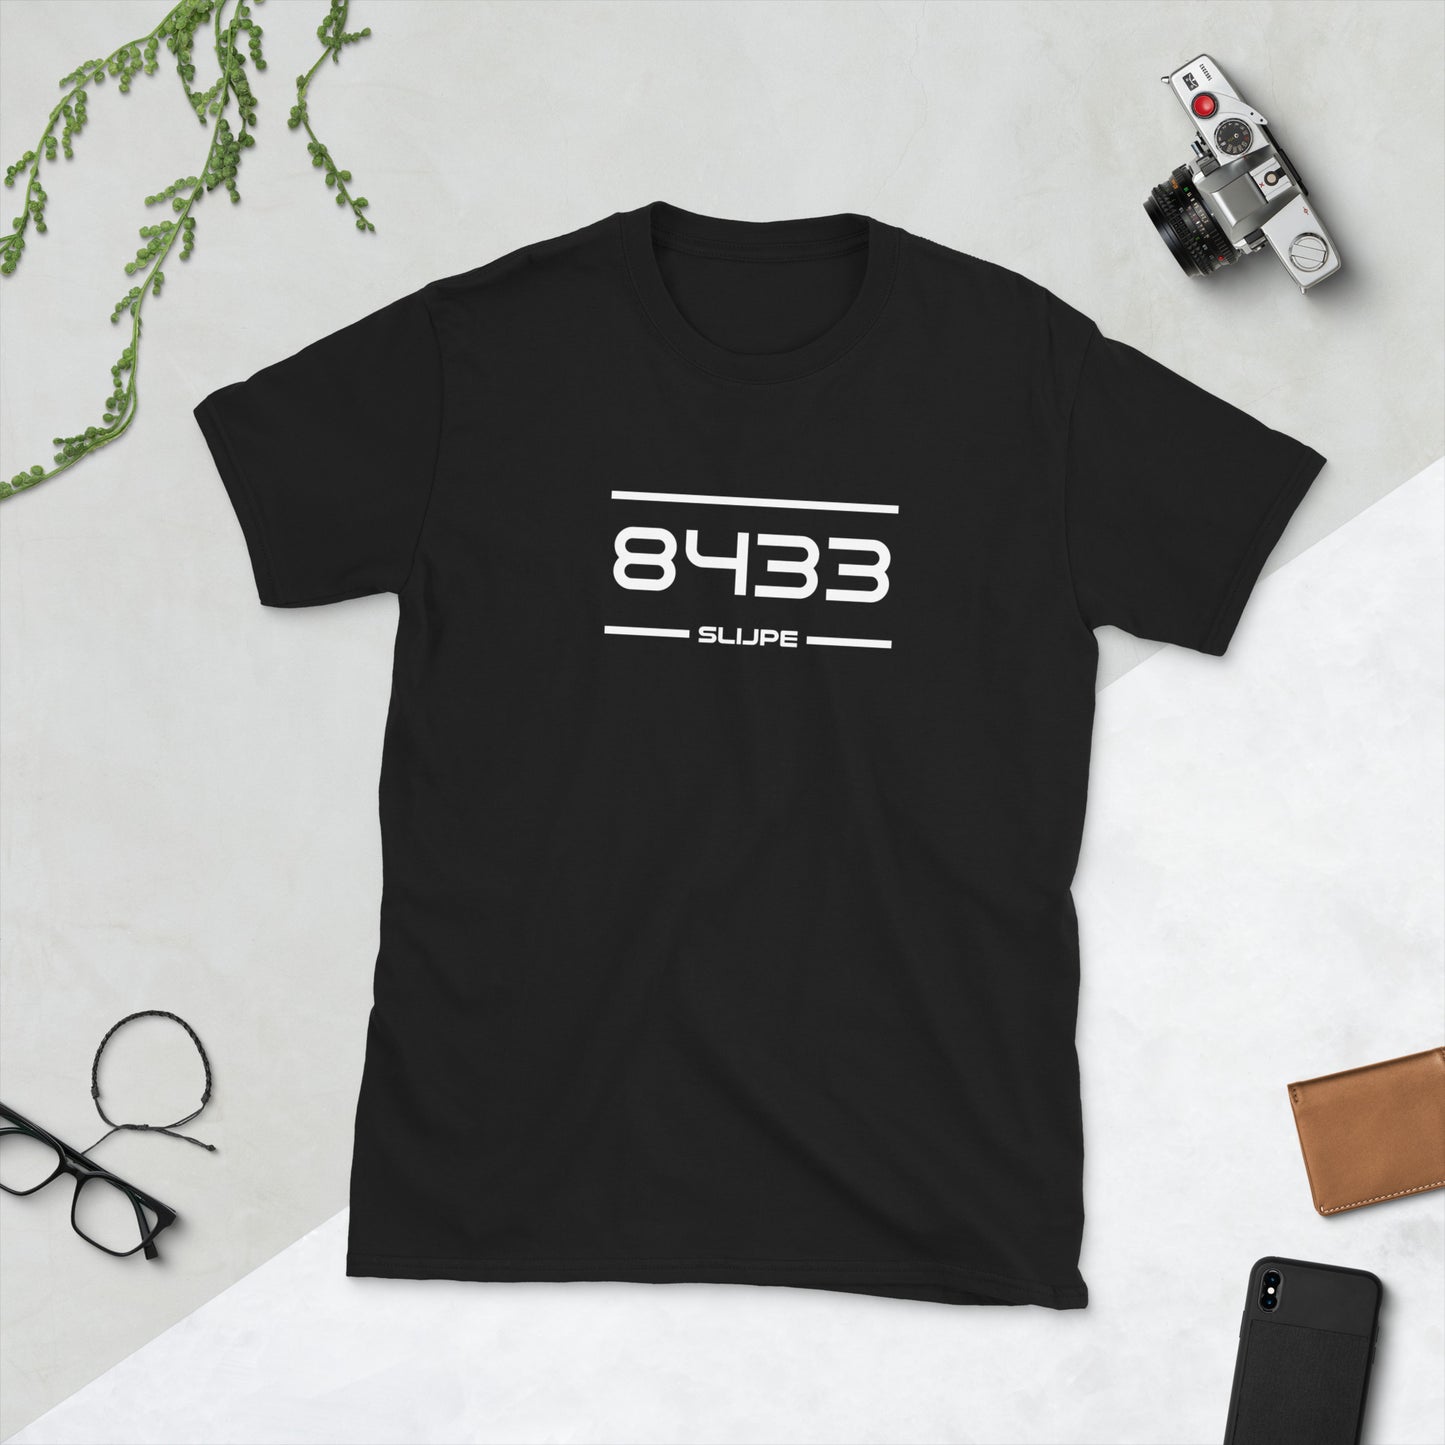 Tshirt - 8433 - Slijpe